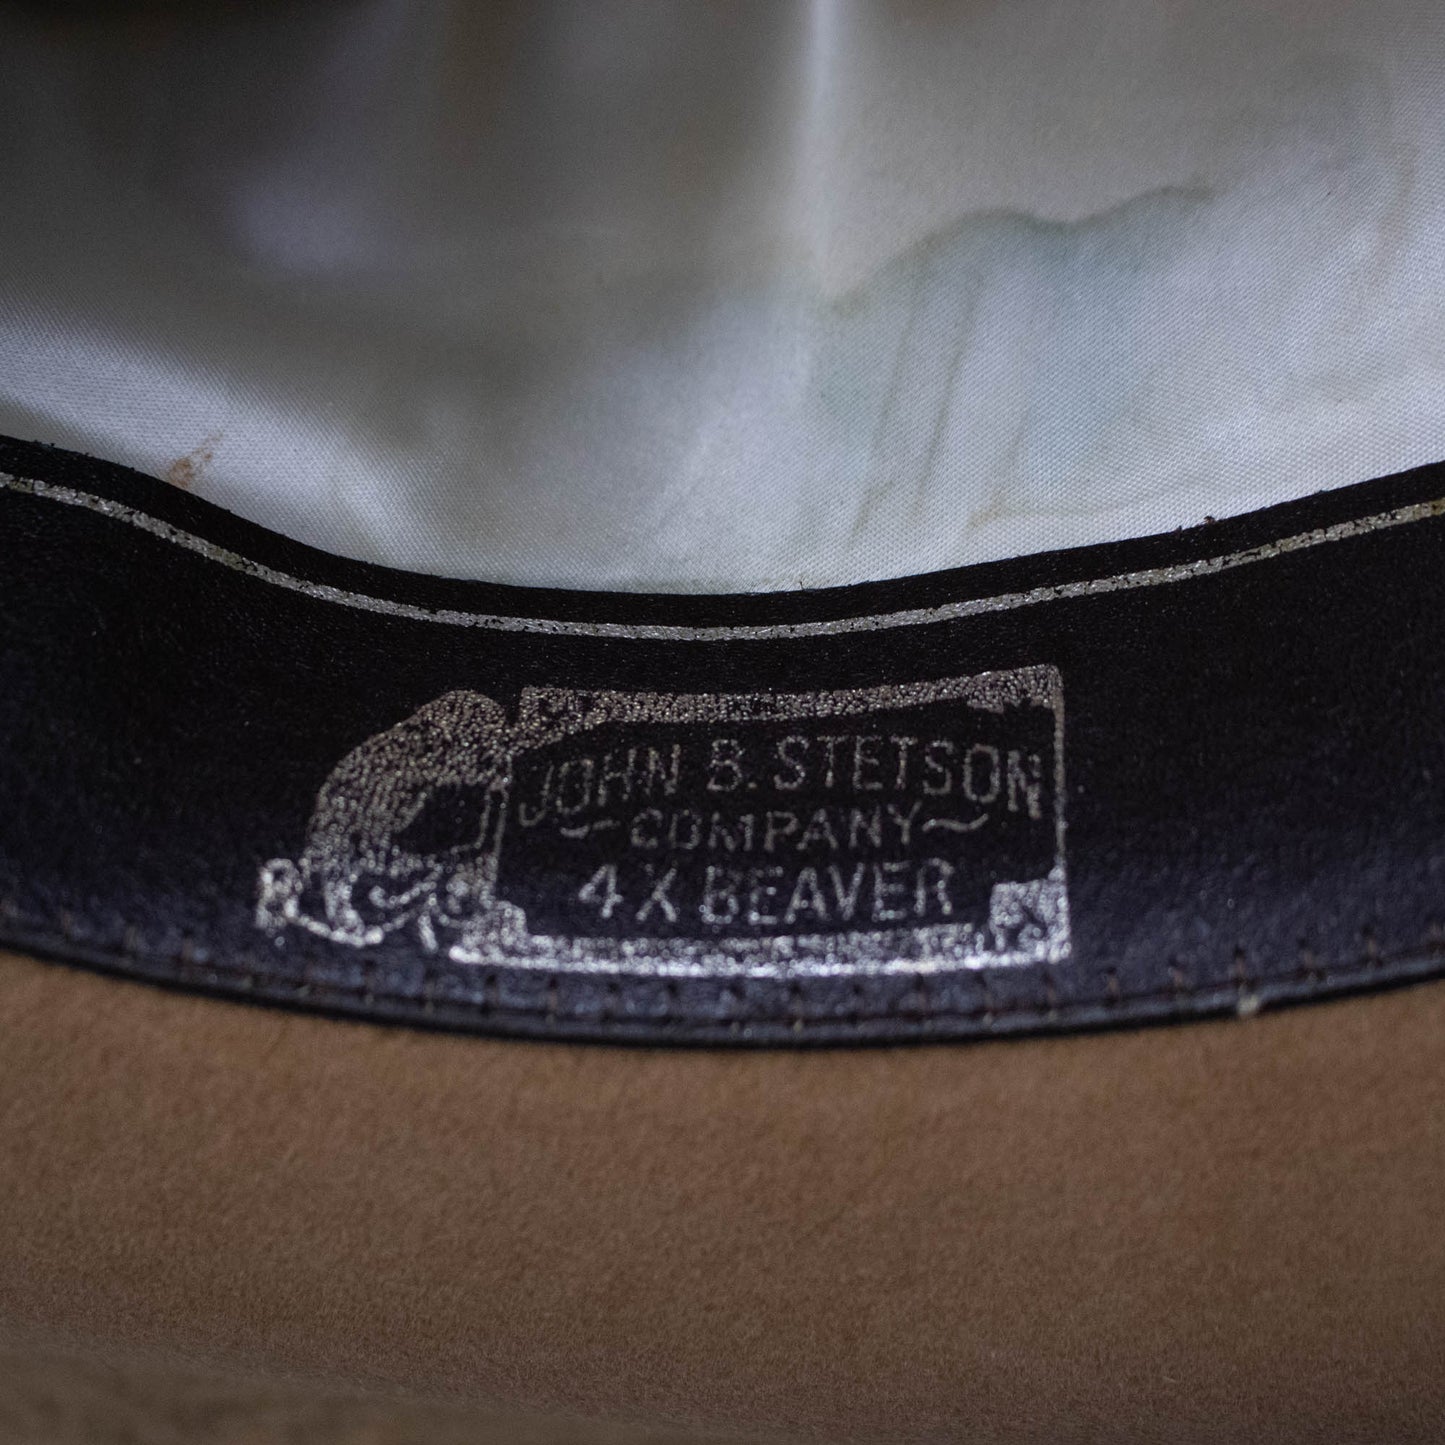 Stetson Beaver Felt Hat